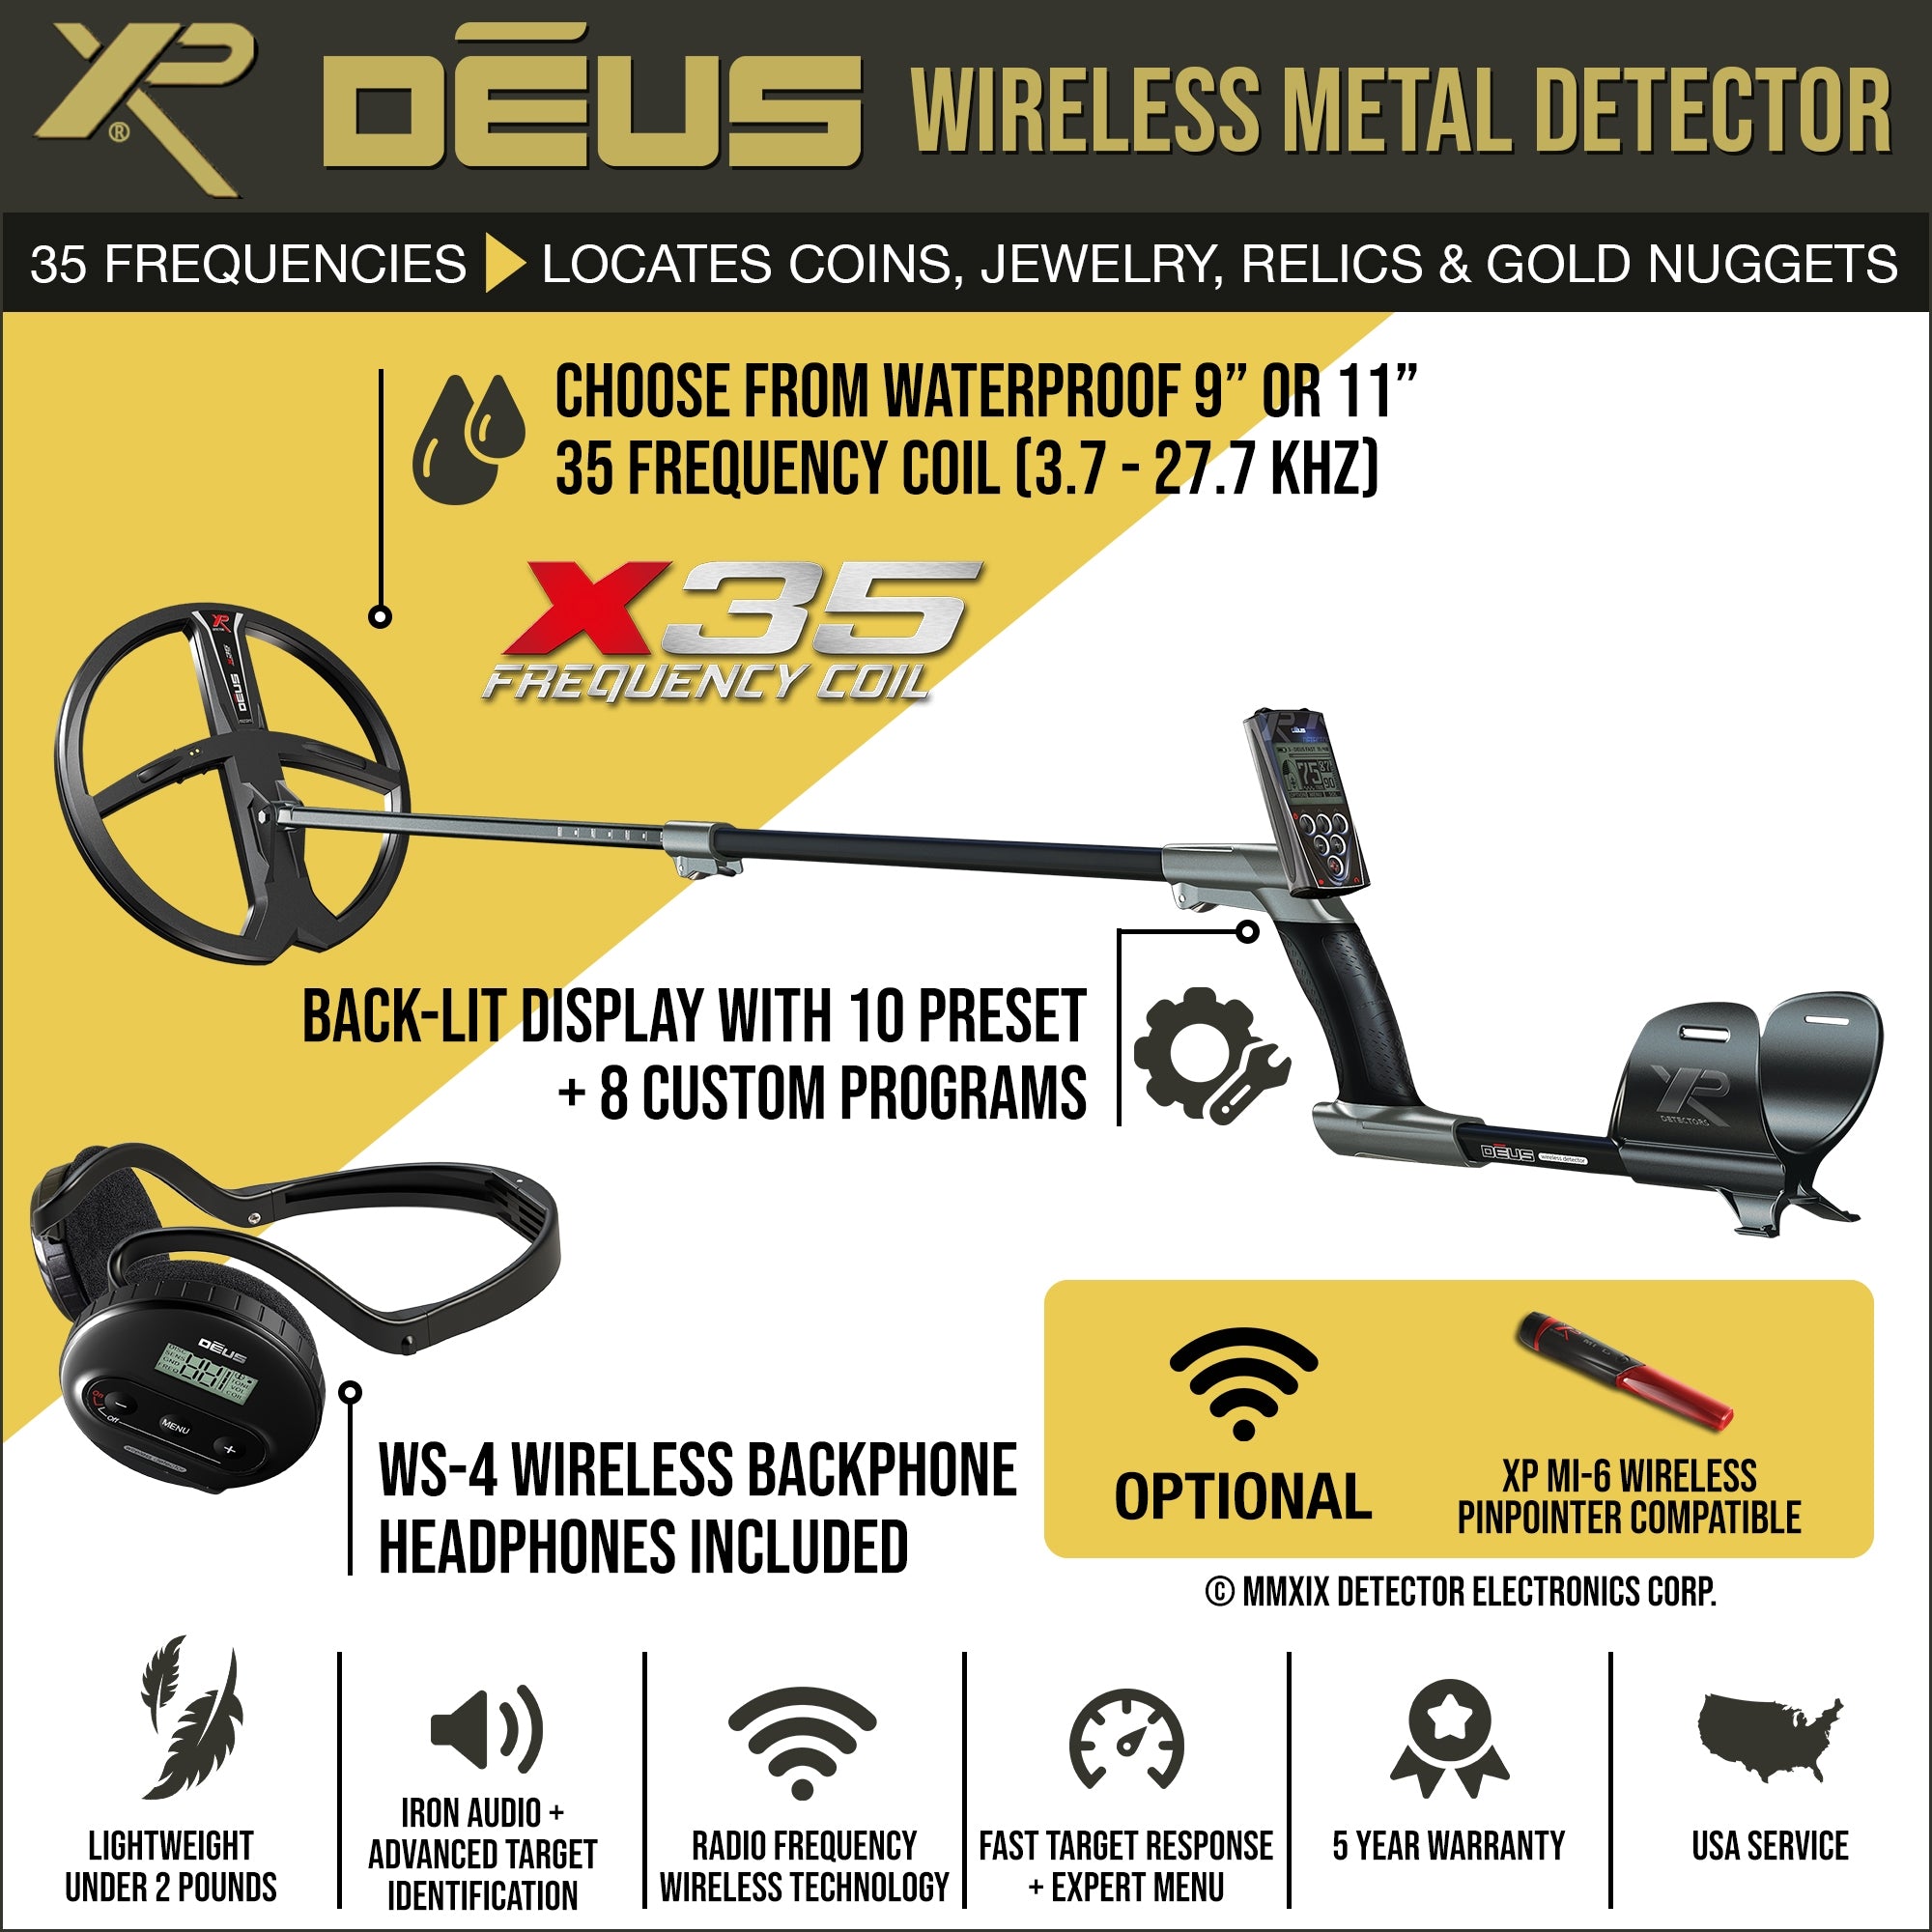 XP DEUS Wireless Metal Detector Shop Features Reviews – MetalDetector